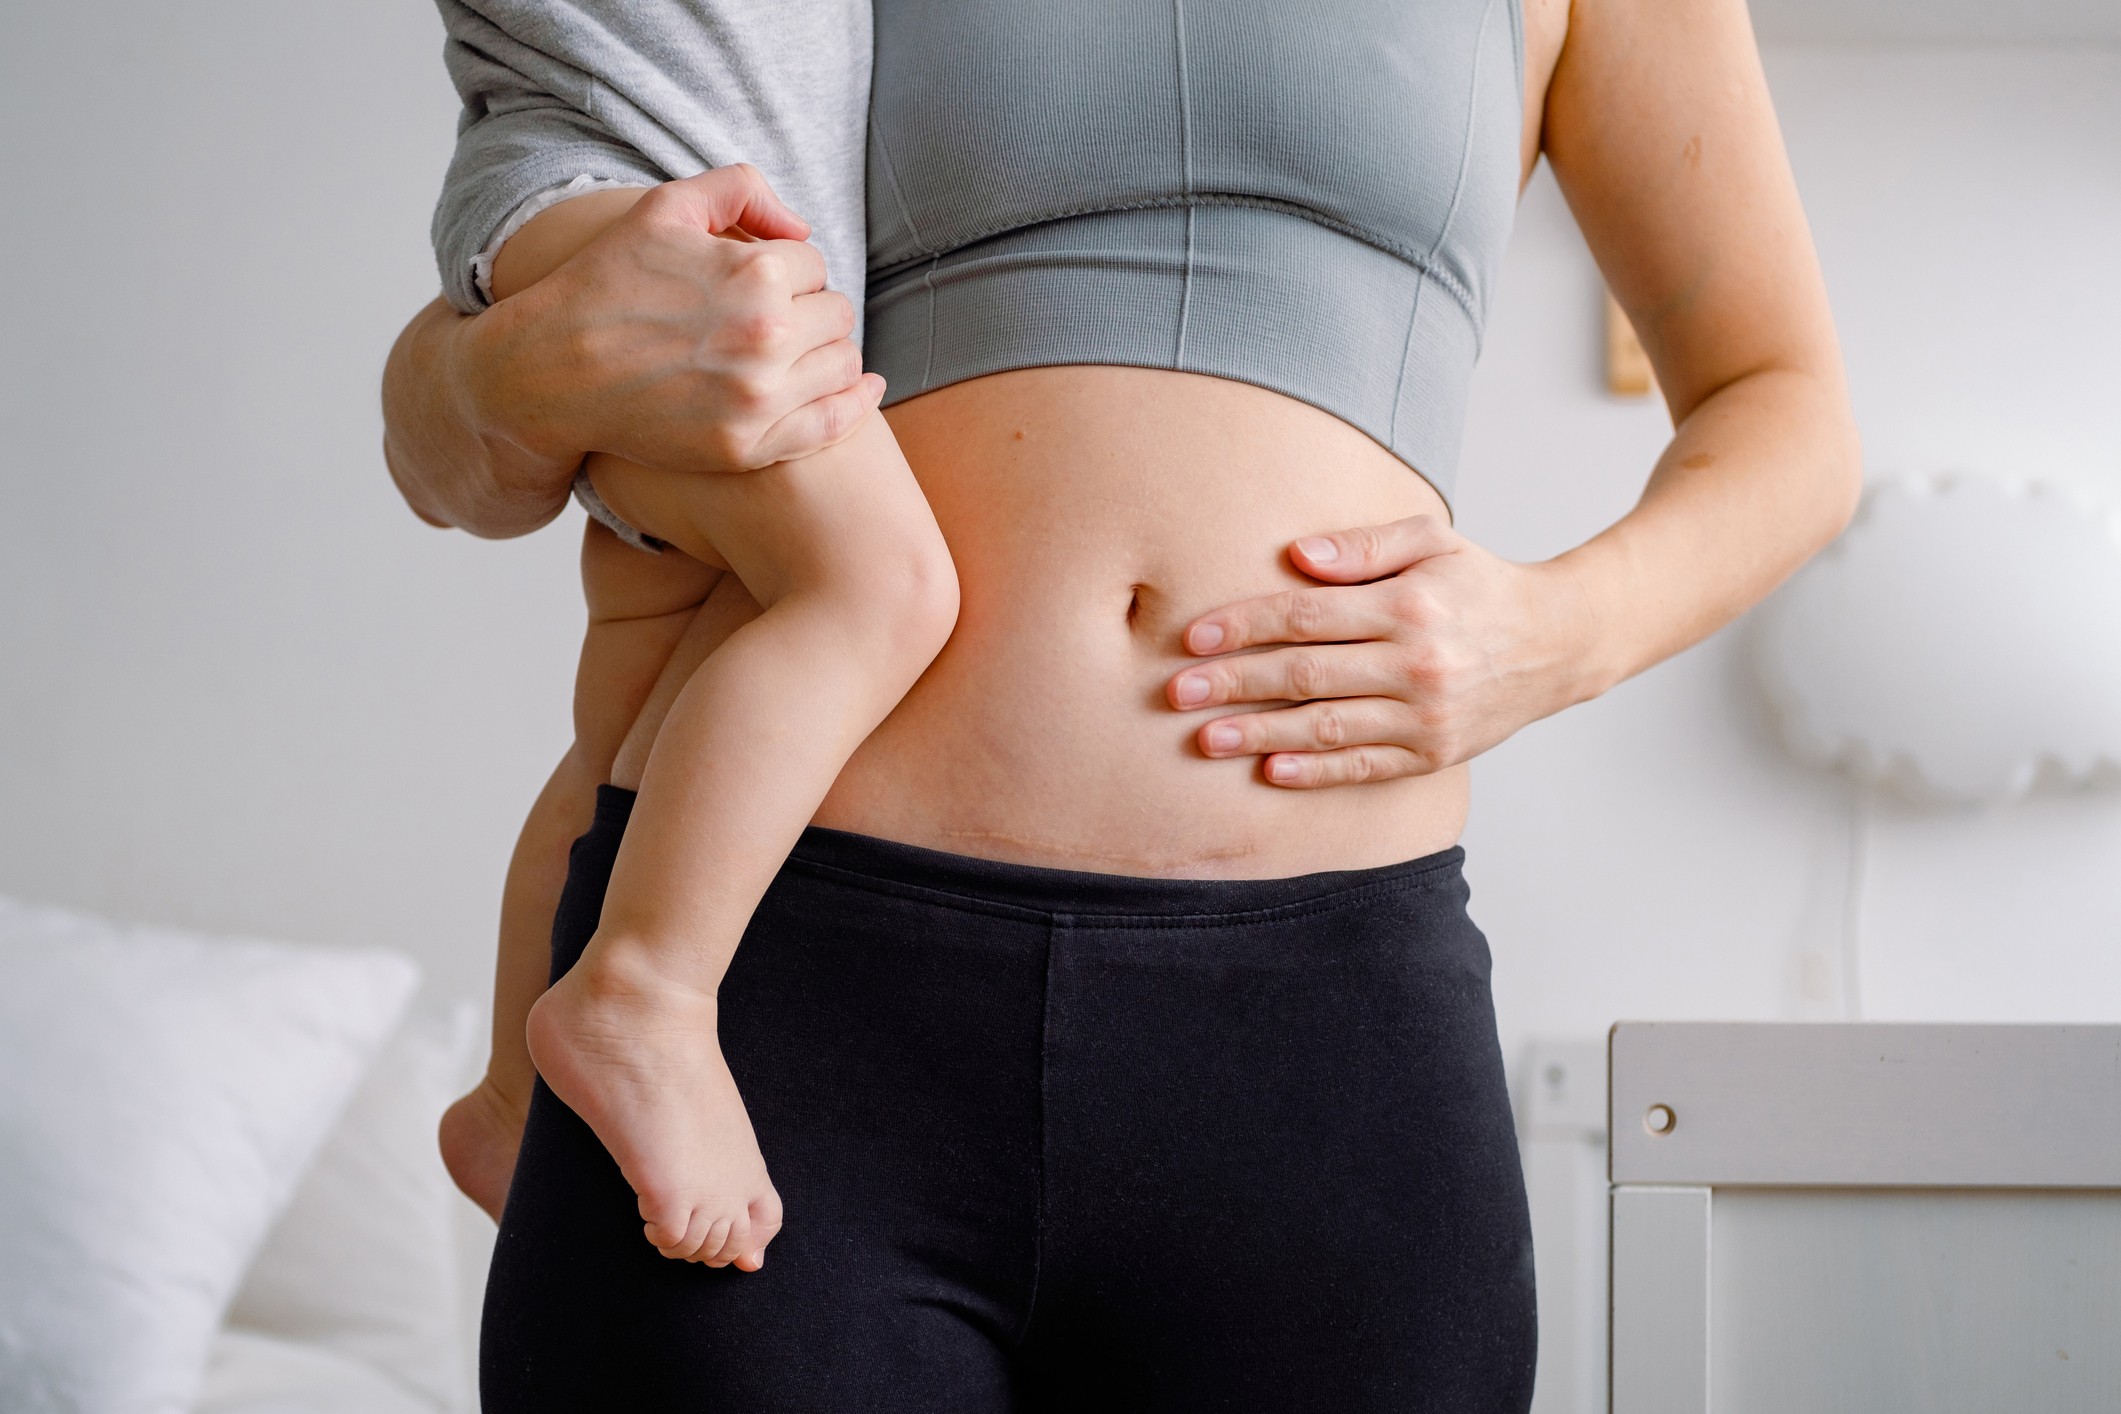 Como corrigir separação de músculos abdominais após a gravidez, que afeta  uma em três mães - BBC News Brasil